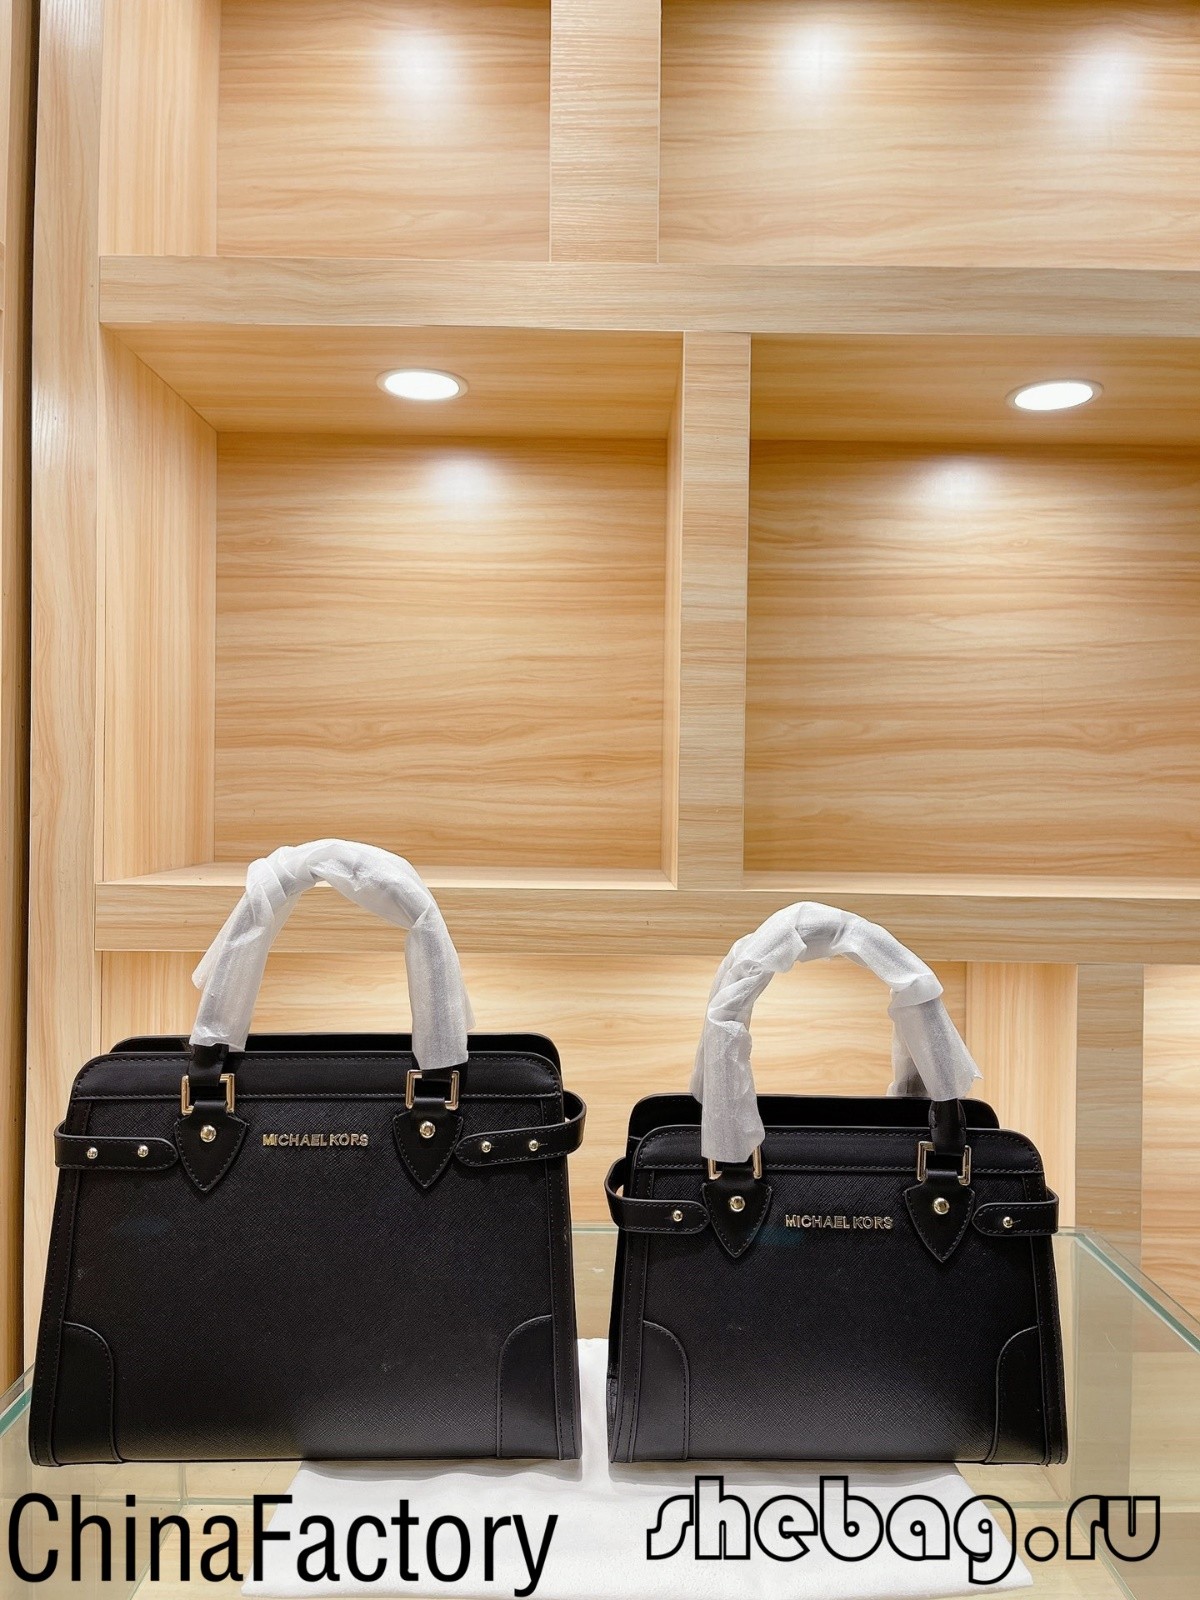 Как распознать поддельную дизайнерскую сумку? (Поддельные или настоящие фото): Майкл Корс-Интернет-магазин поддельной сумки Louis Vuitton лучшего качества, копия дизайнерской сумки ru